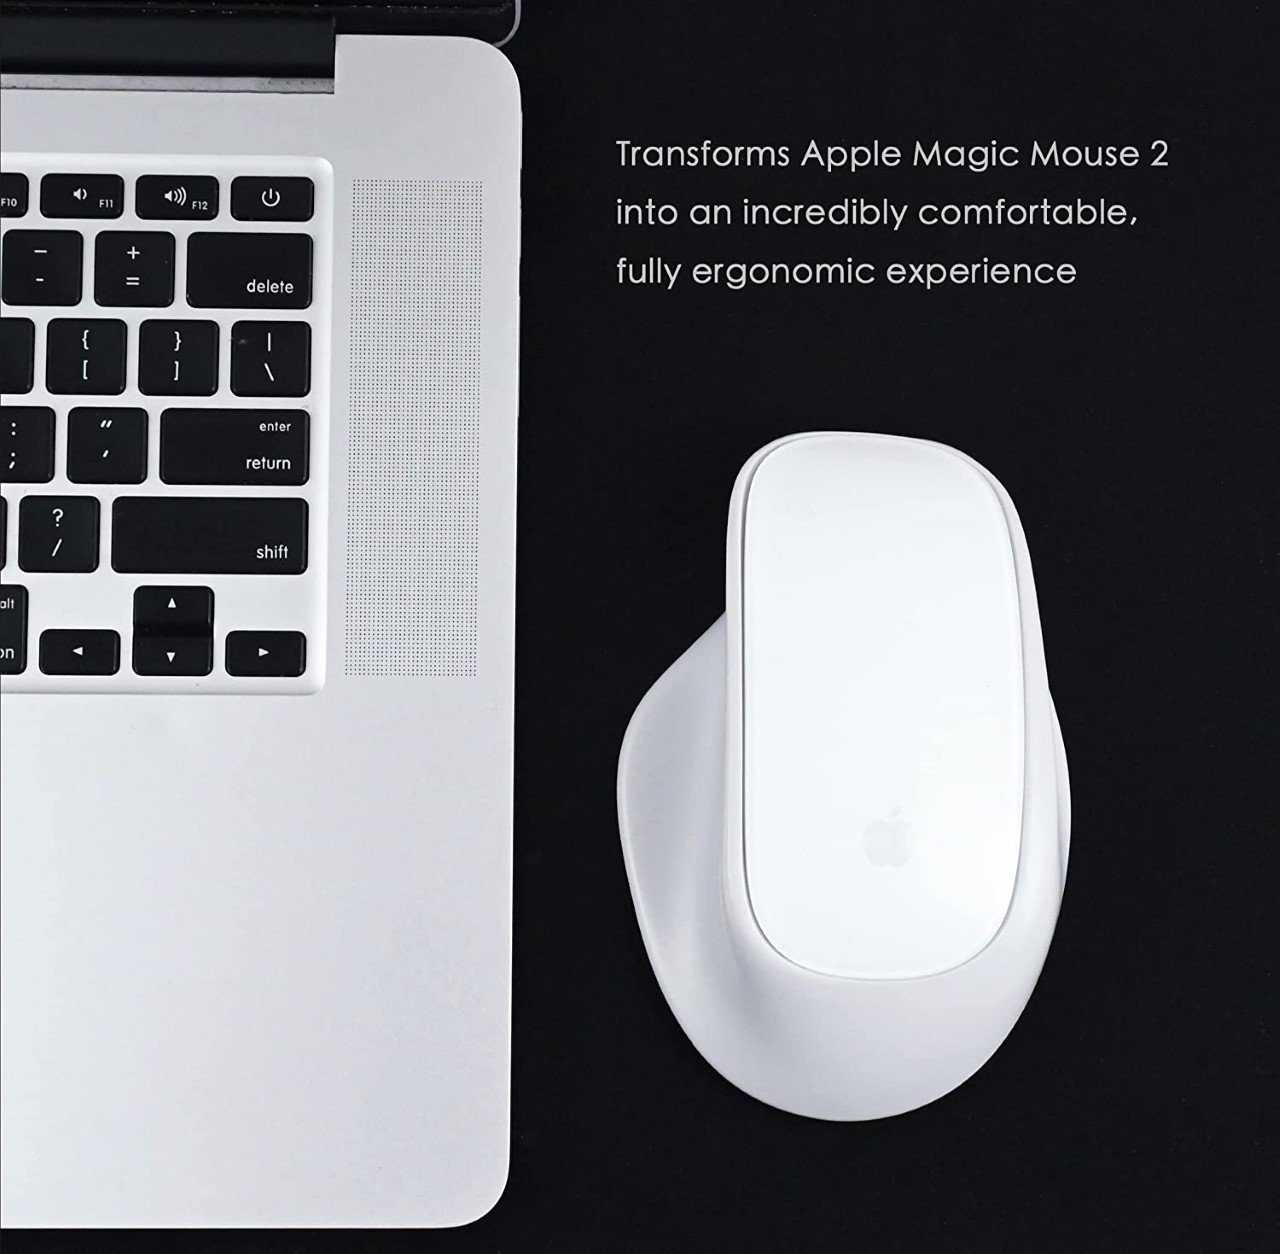 Mỏi tay với Apple Magic Mouse ư, đây là giải pháp! - Ảnh 1.